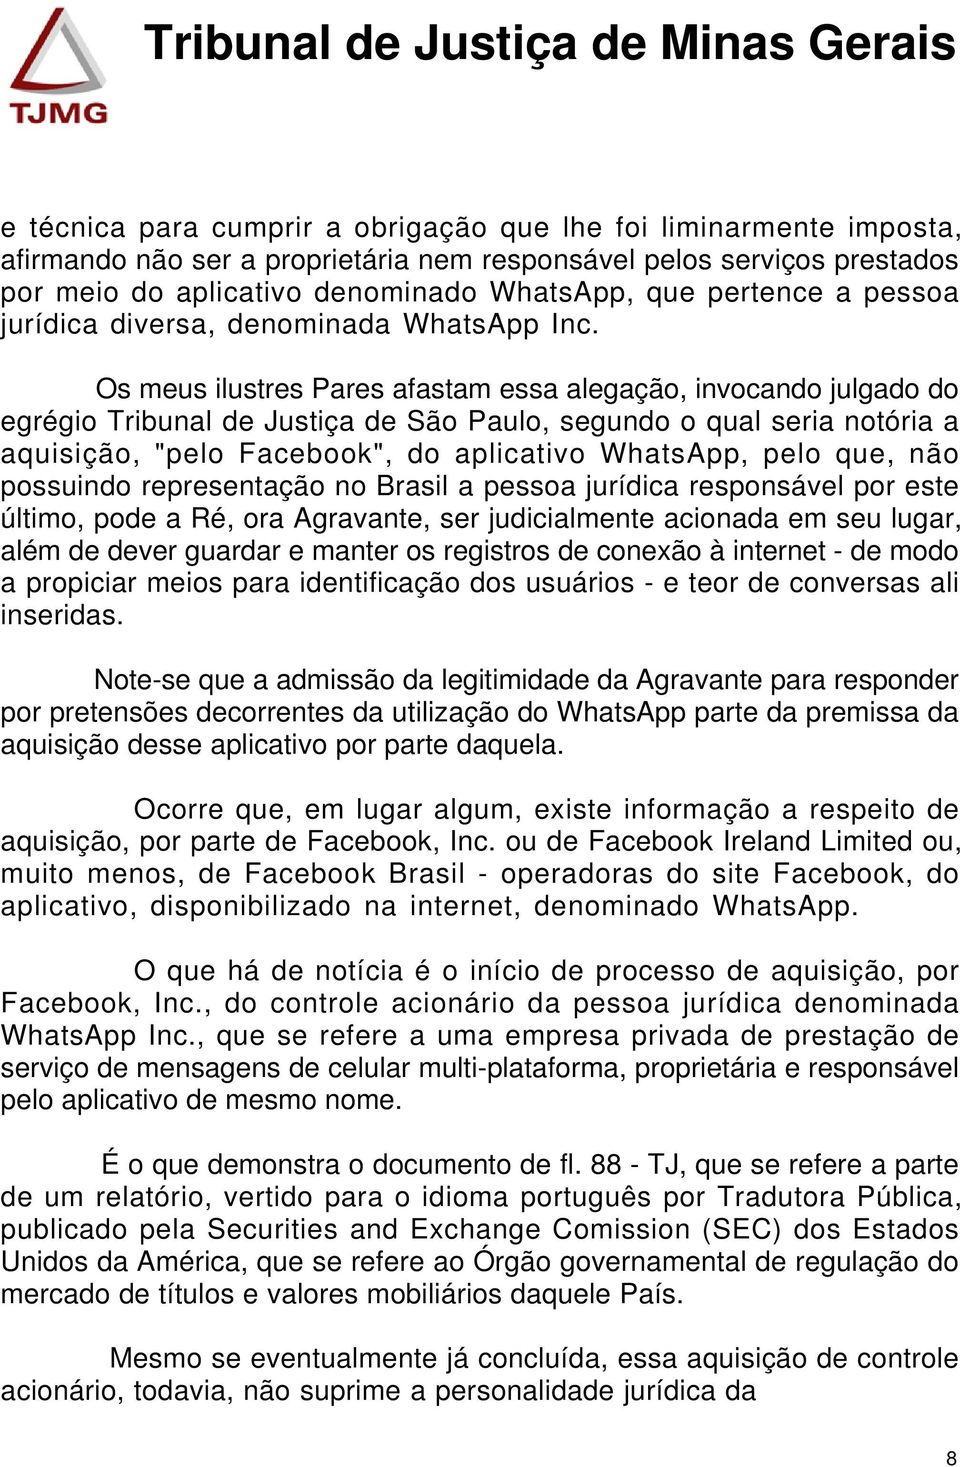 Os meus ilustres Pares afastam essa alegação, invocando julgado do egrégio Tribunal de Justiça de São Paulo, segundo o qual seria notória a aquisição, "pelo Facebook", do aplicativo WhatsApp, pelo